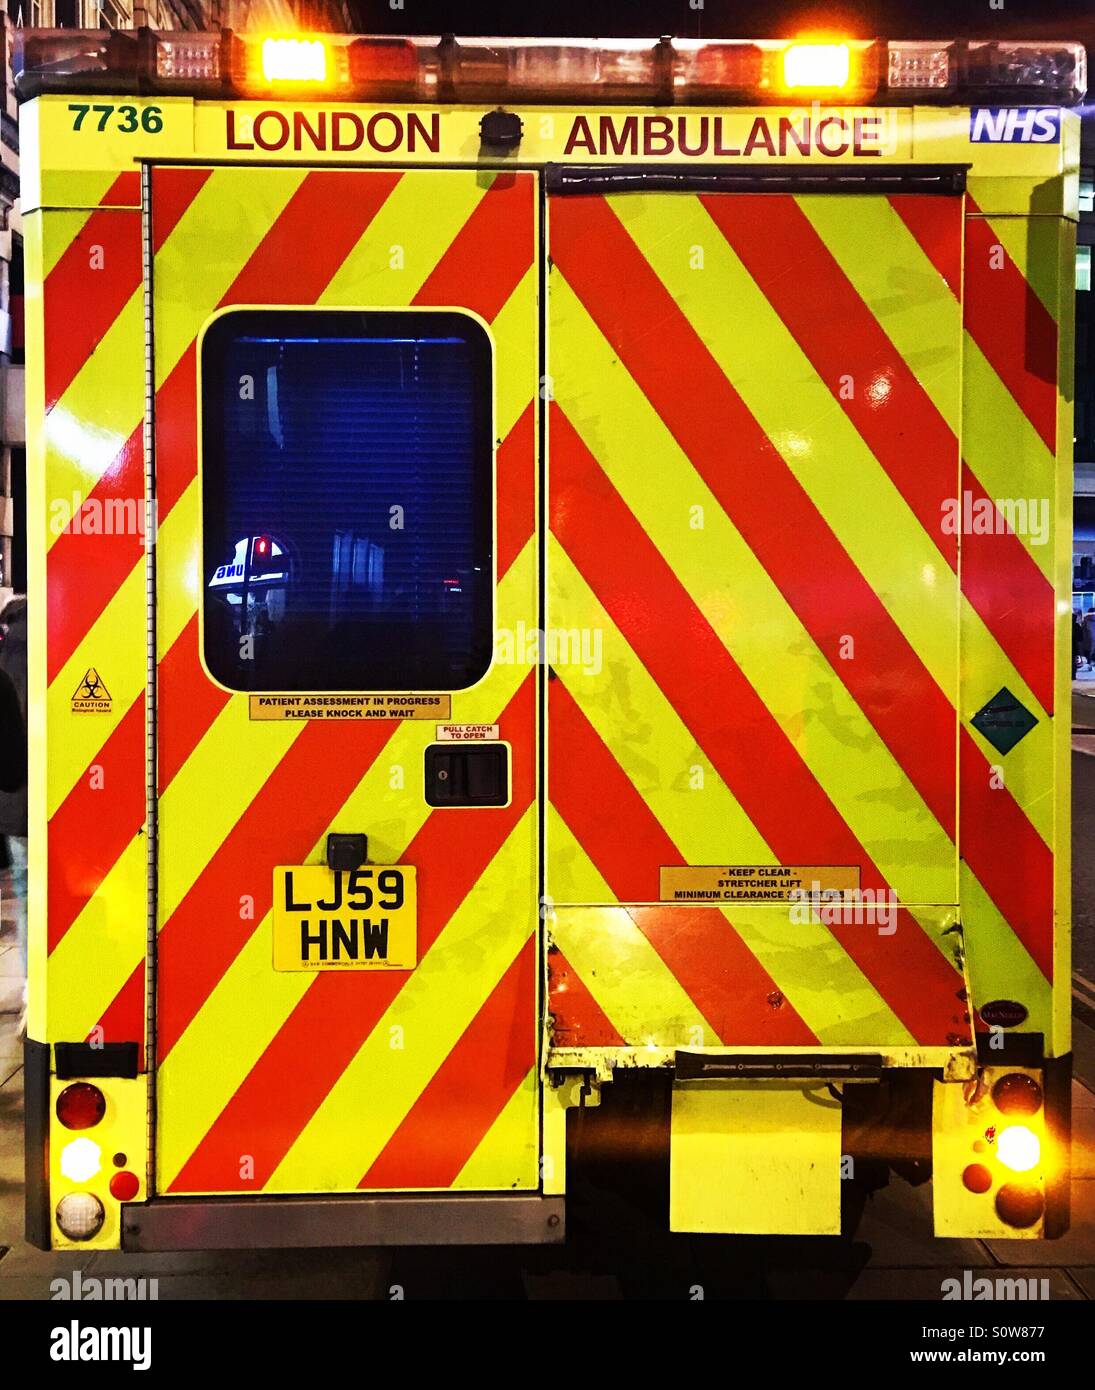 Vista trasera de una ambulancia de emergencia del NHS de Londres. Foto de stock